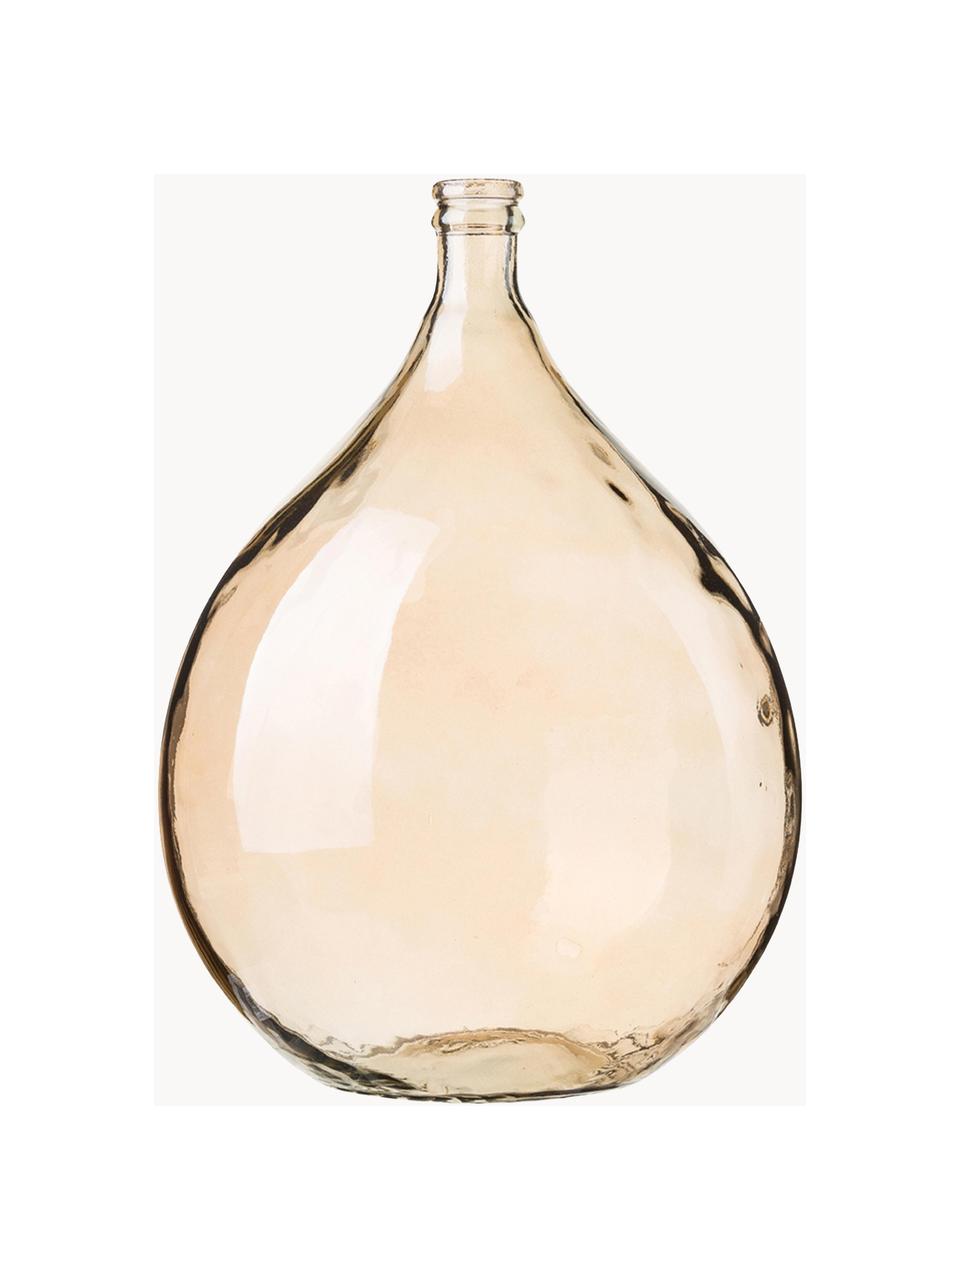 Podlahová váza z recyklovaného skla Drop, V 56 cm, Recyklované sklo, Světle hnědá, Ø 40 cm, V 56 cm